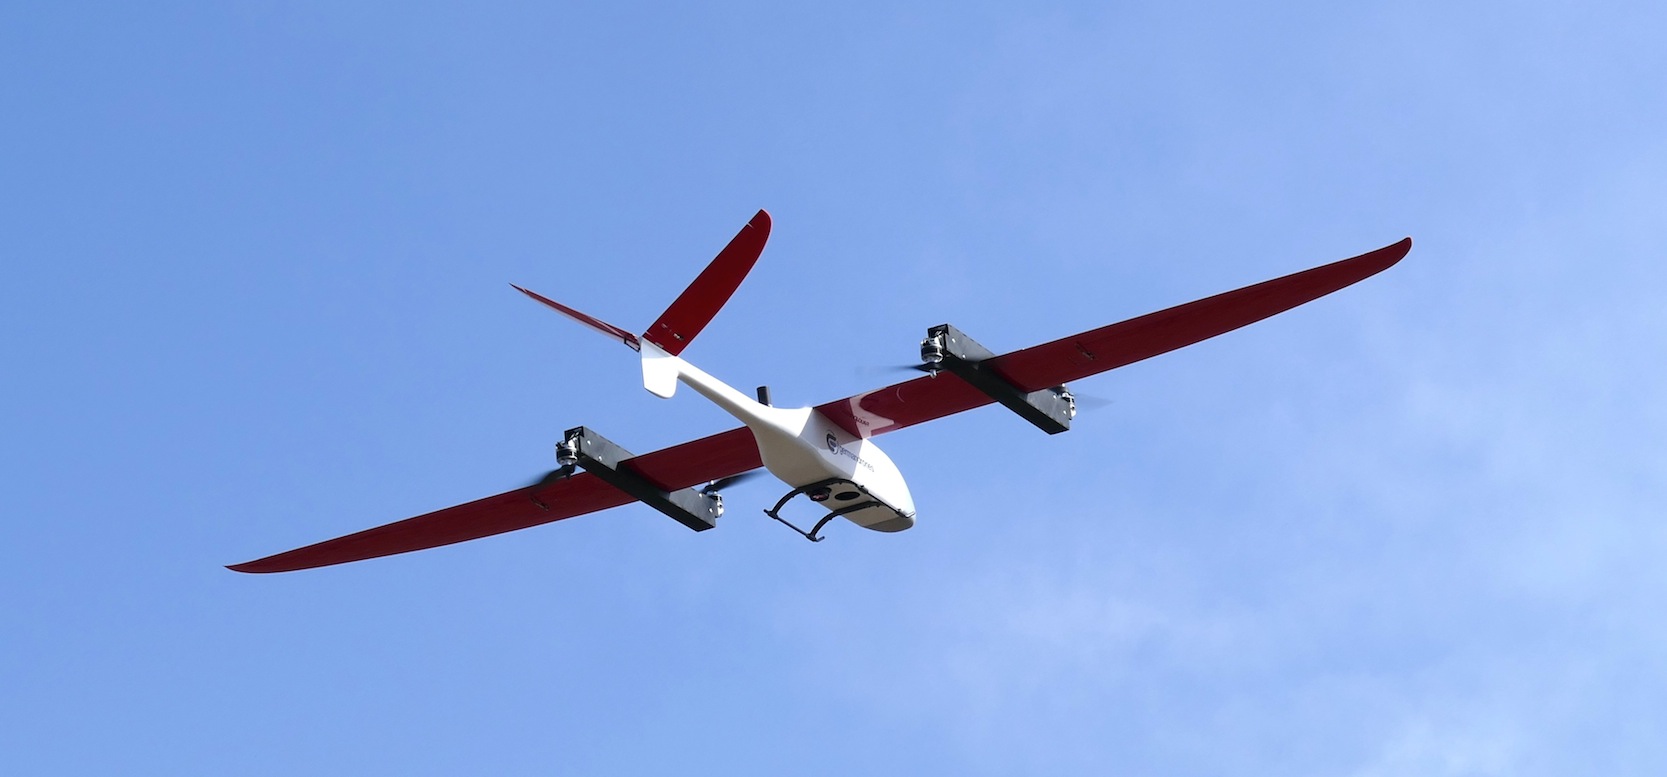 Die eingesetzte Drohne kann senkrecht starten und landen. Sie hat eine Spannweite von 3,1 m.